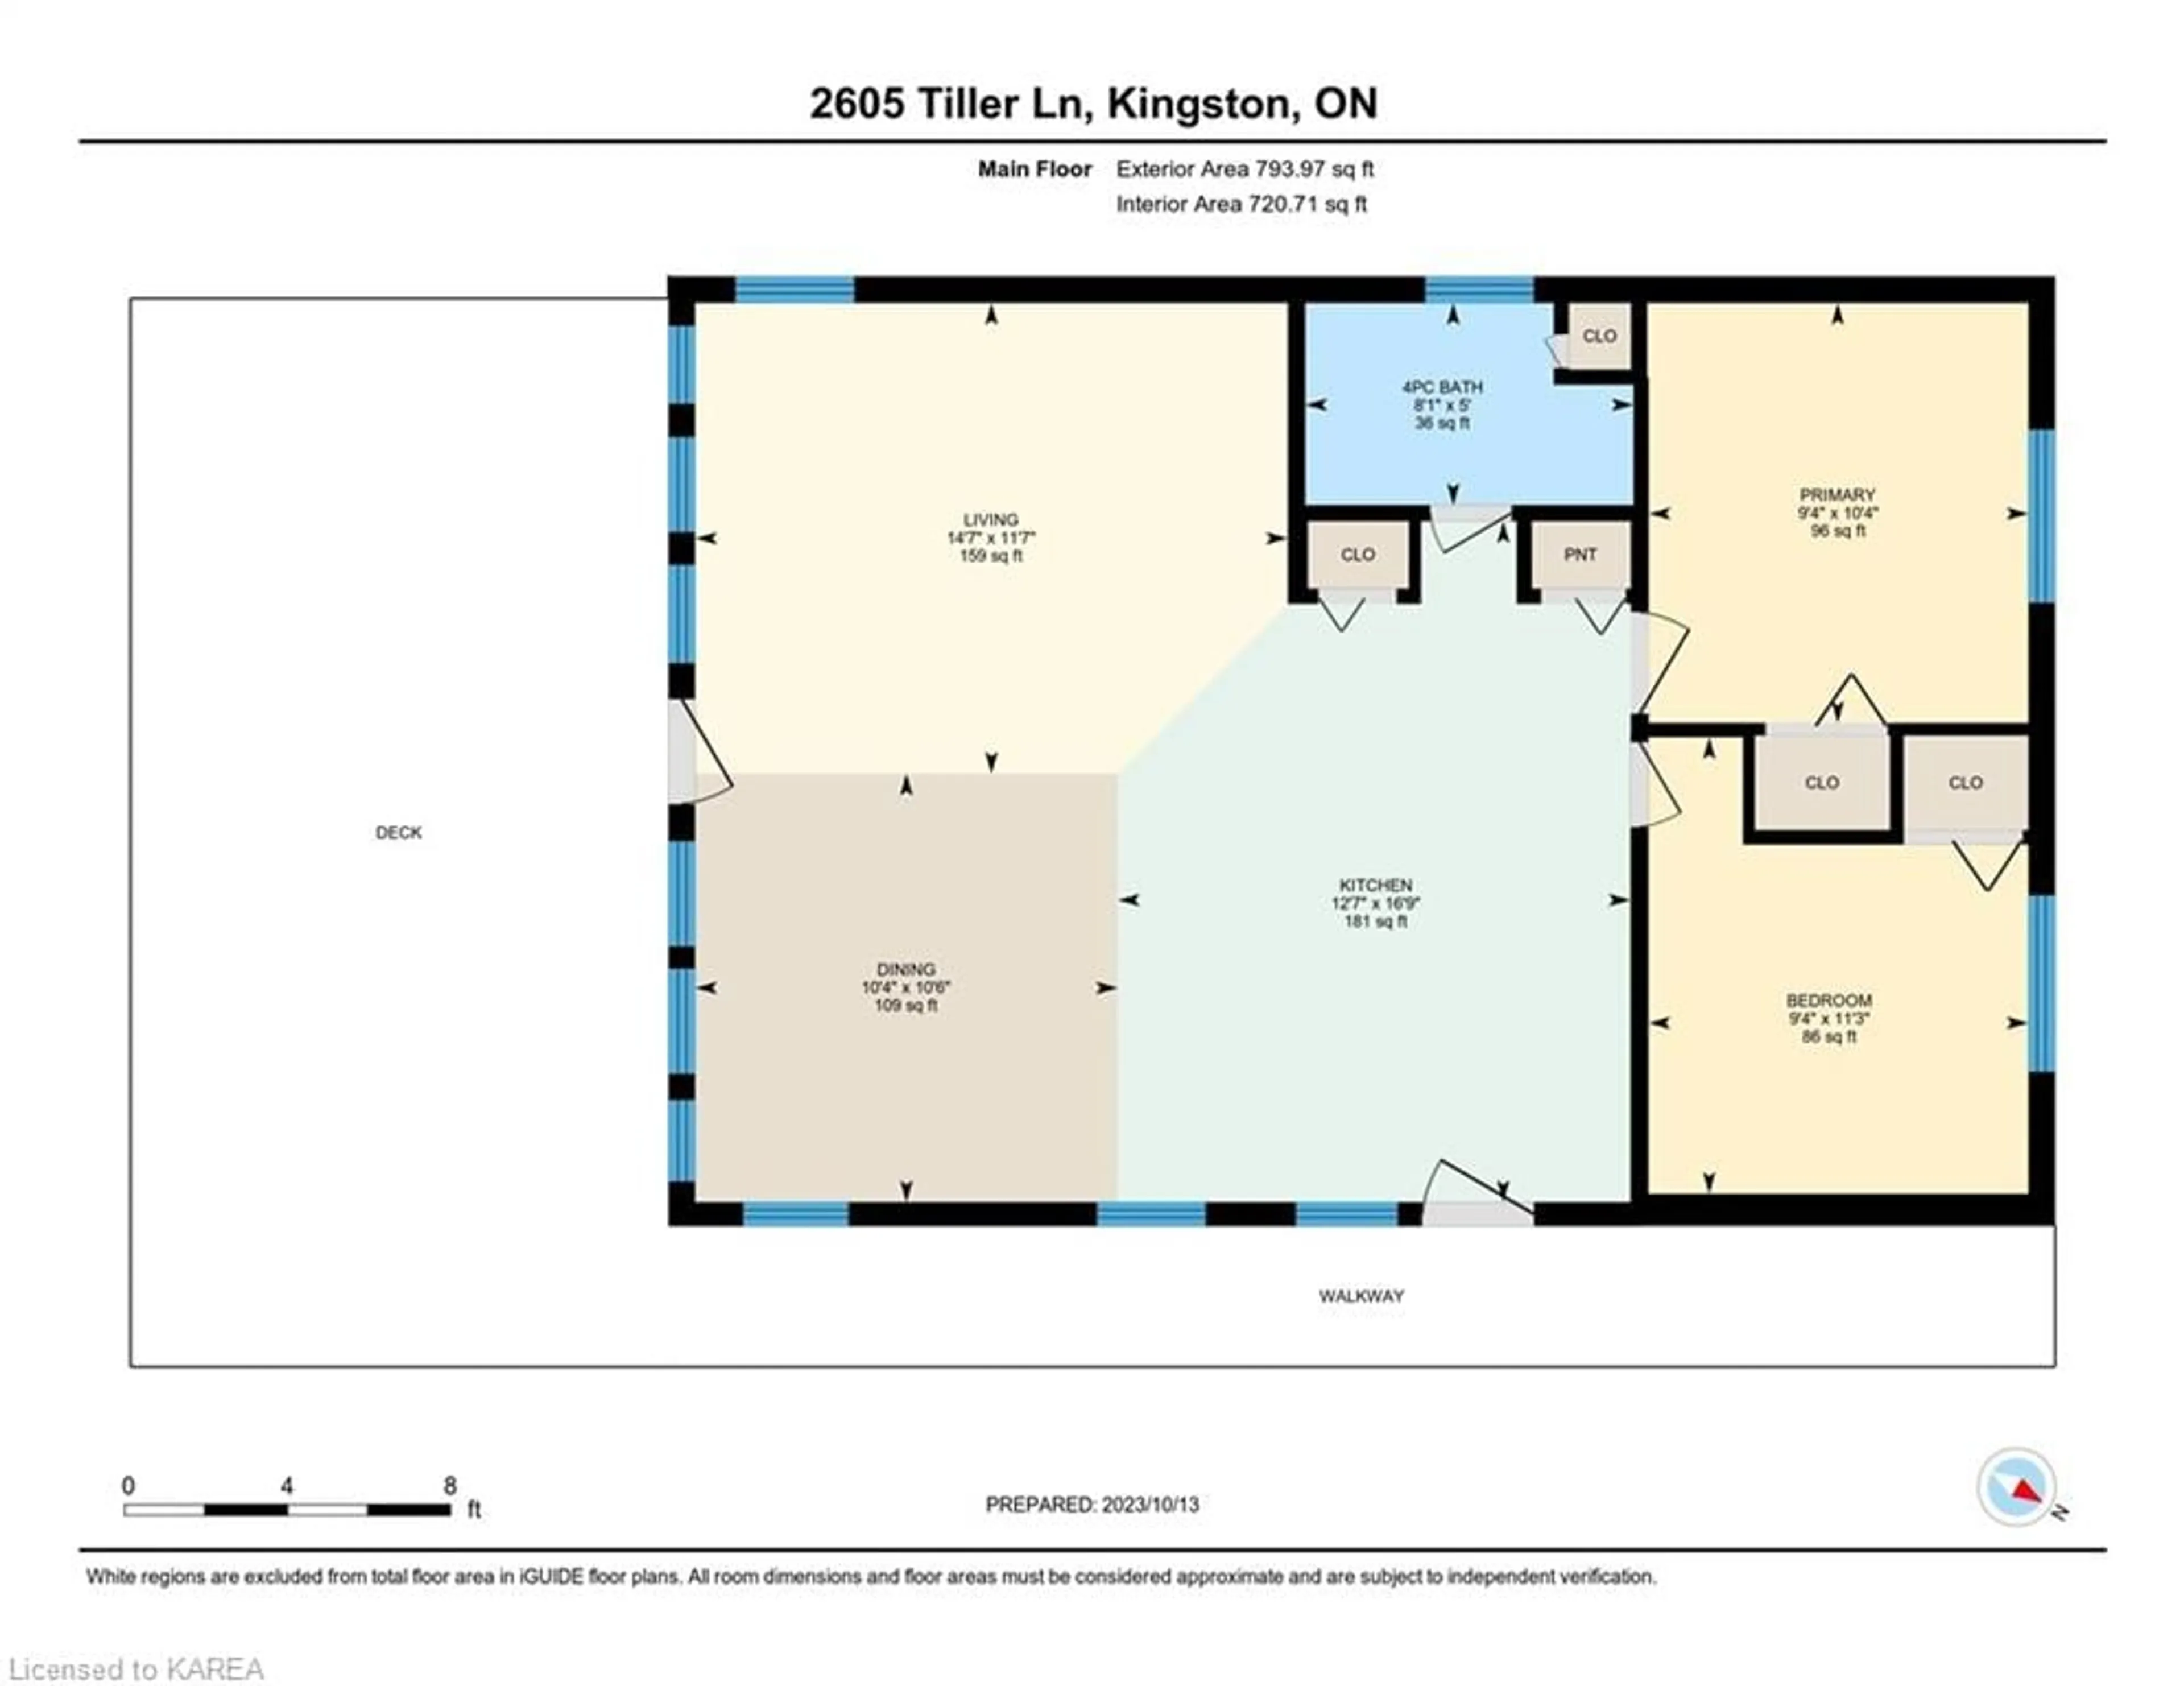 Floor plan for 2605 Tiller Lane, Kingston Ontario K7L 5H6